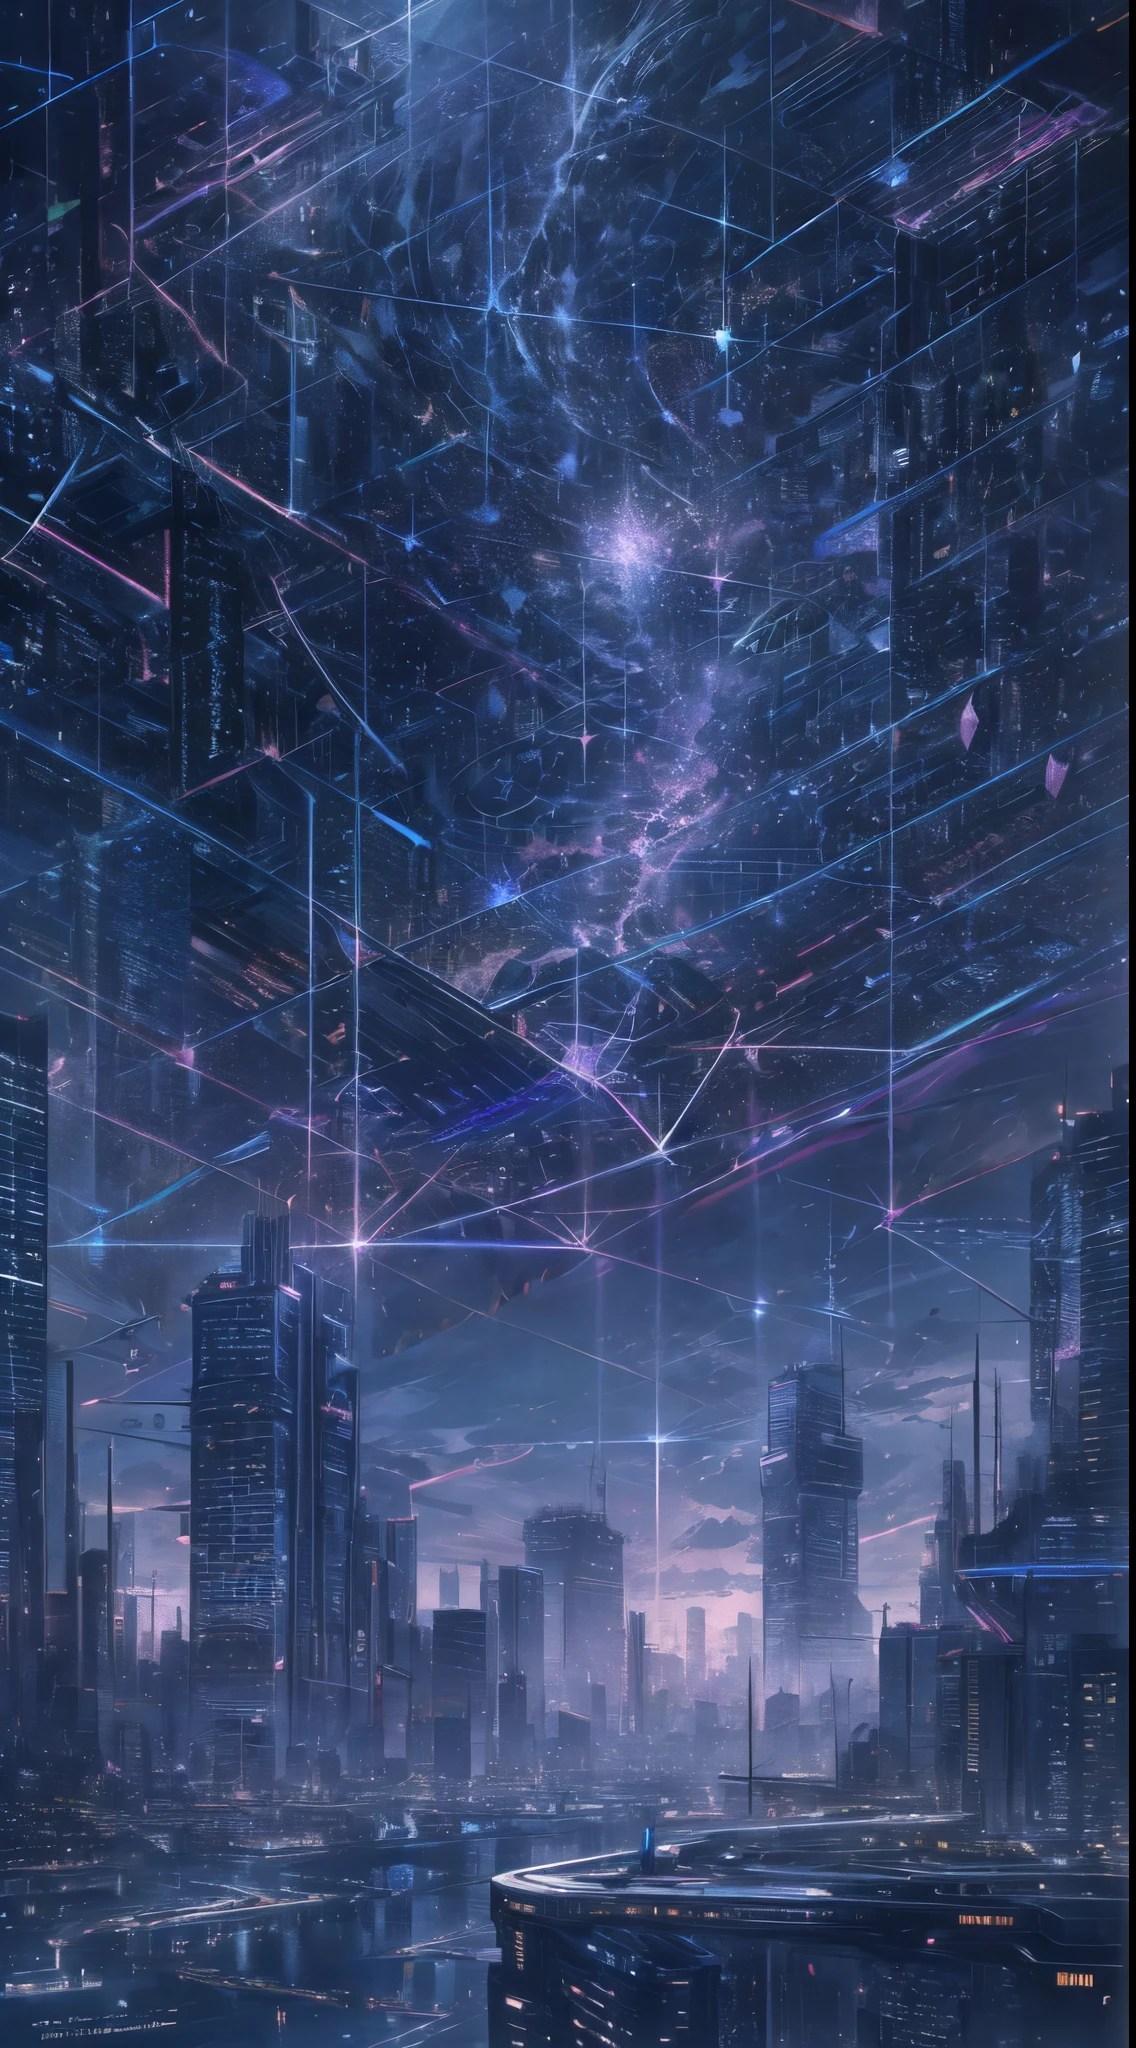 ciel étoilé avec les constellations du zodiaque, nuances de violet comme s&#39;il s&#39;agissait de nébuleuses, vaste espace, ville cyberpunk en bas,